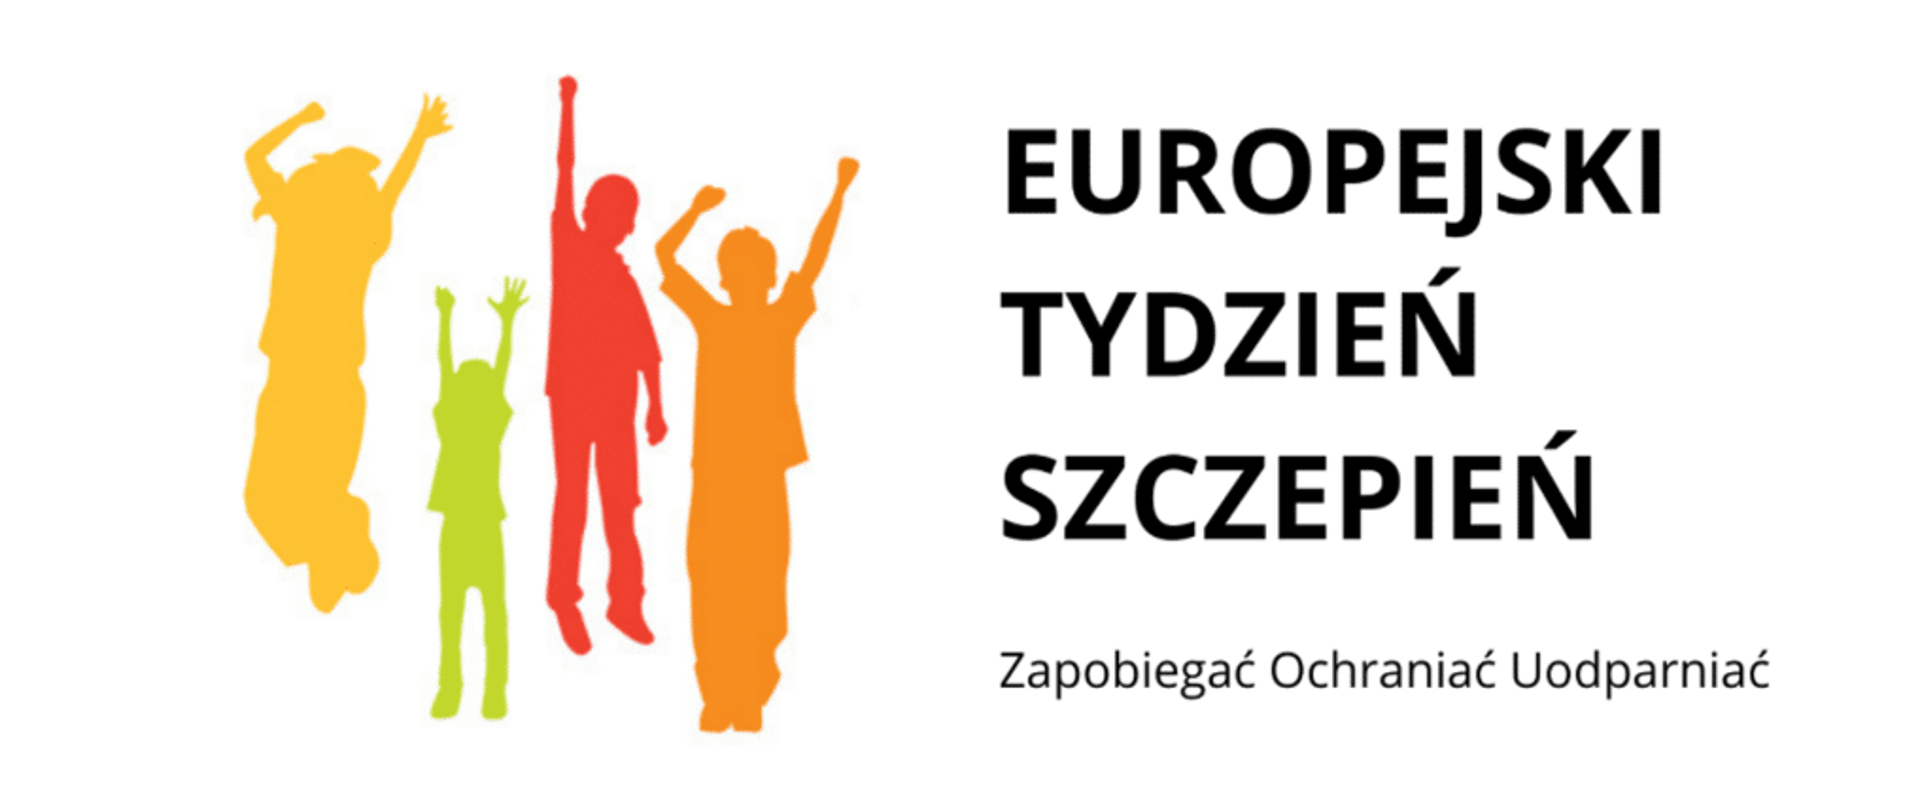 Obraz zawierający tekst "Europejski Tydzień Szczepień" oraz kolorową grafikę przedstawiającą cztery osoby z uniesionymi radośnie rękami.